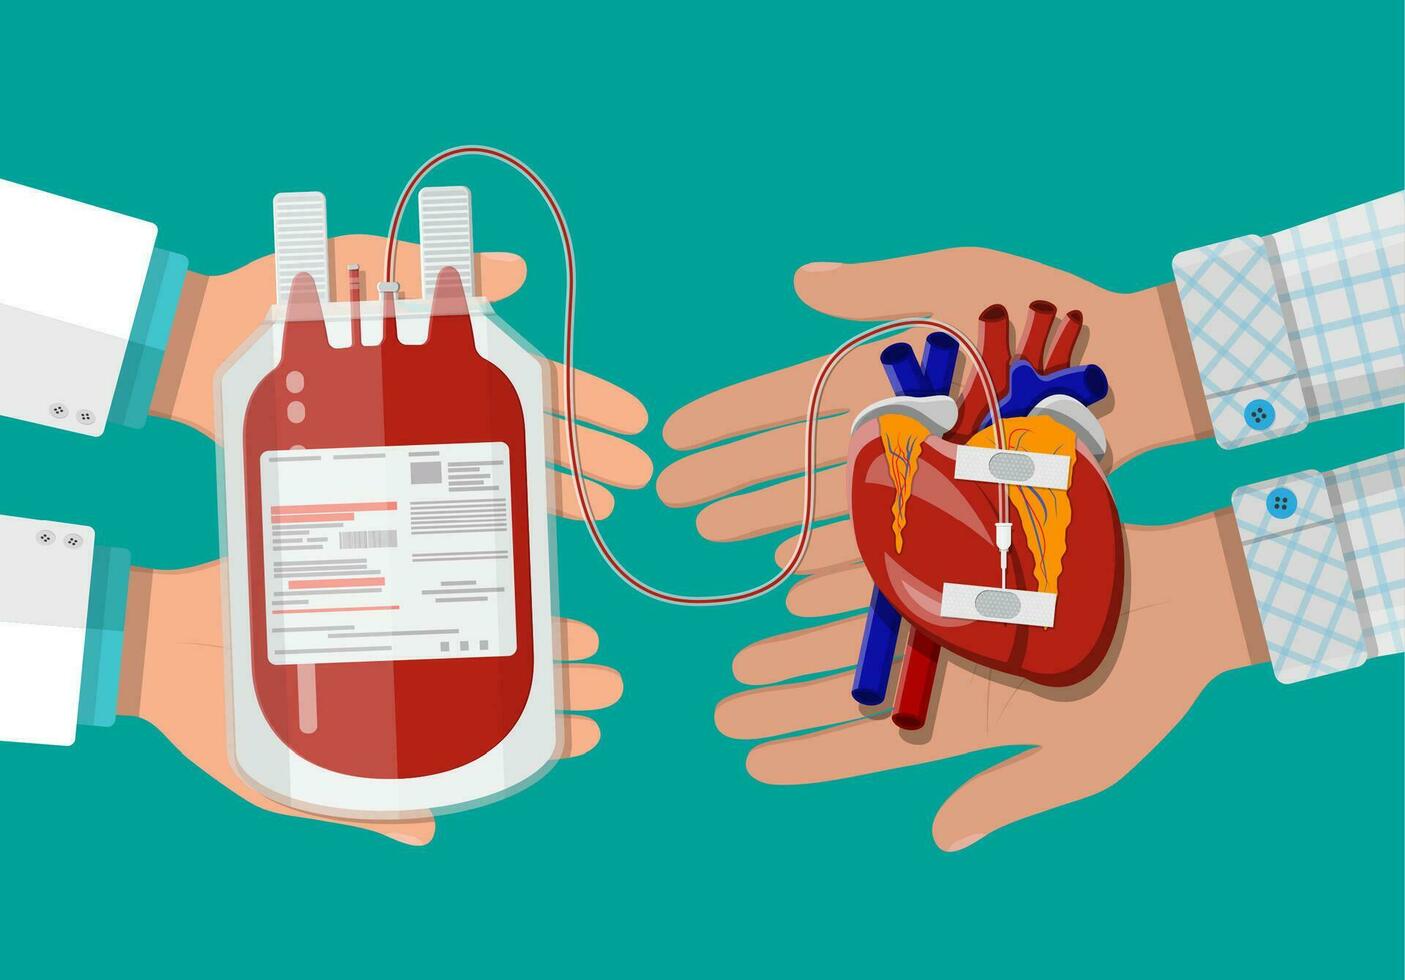 bloed zak en hand- van schenker met hart. bloed bijdrage dag concept. menselijk doneert bloed. vector illustratie in vlak stijl.